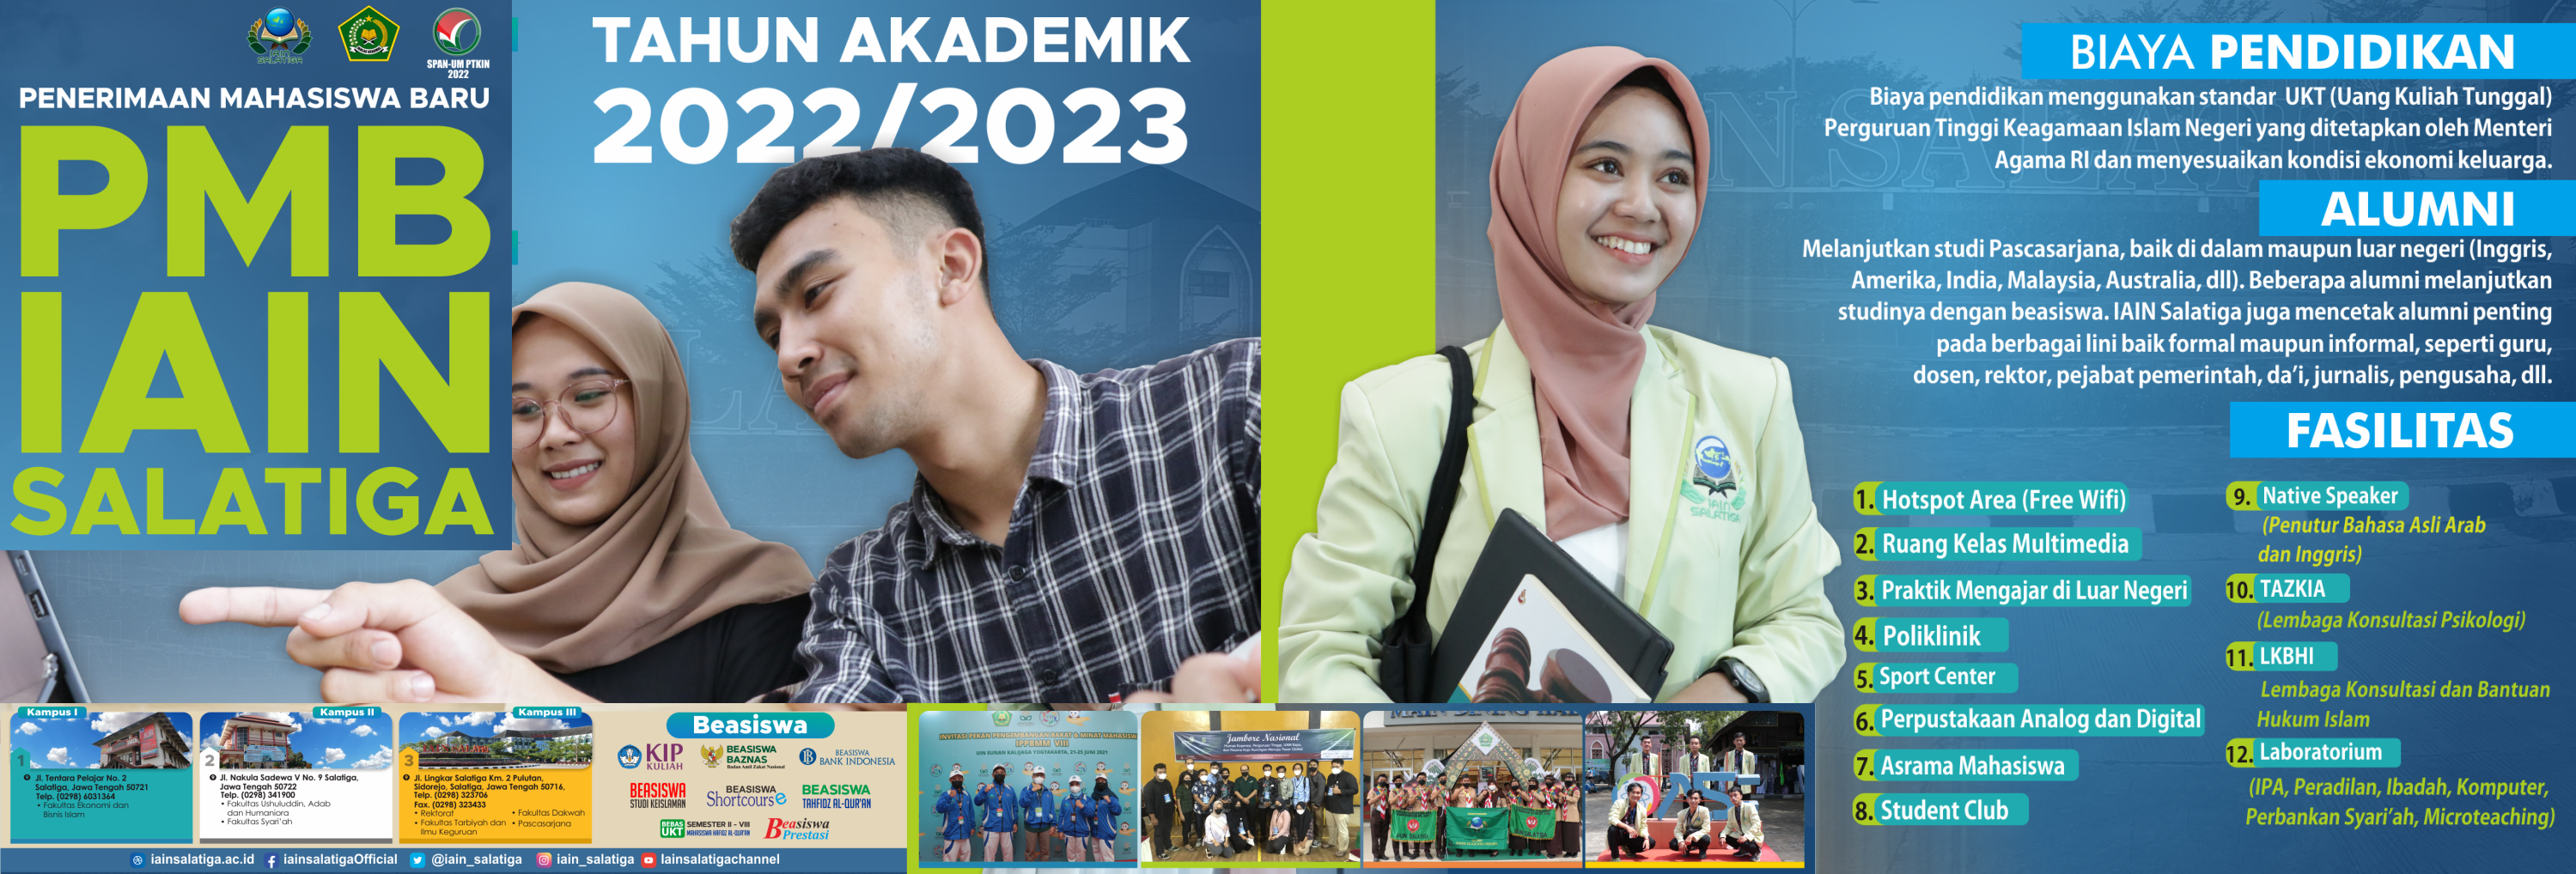 PMB IAIN Salatiga Tahun Akademik 2022/2023